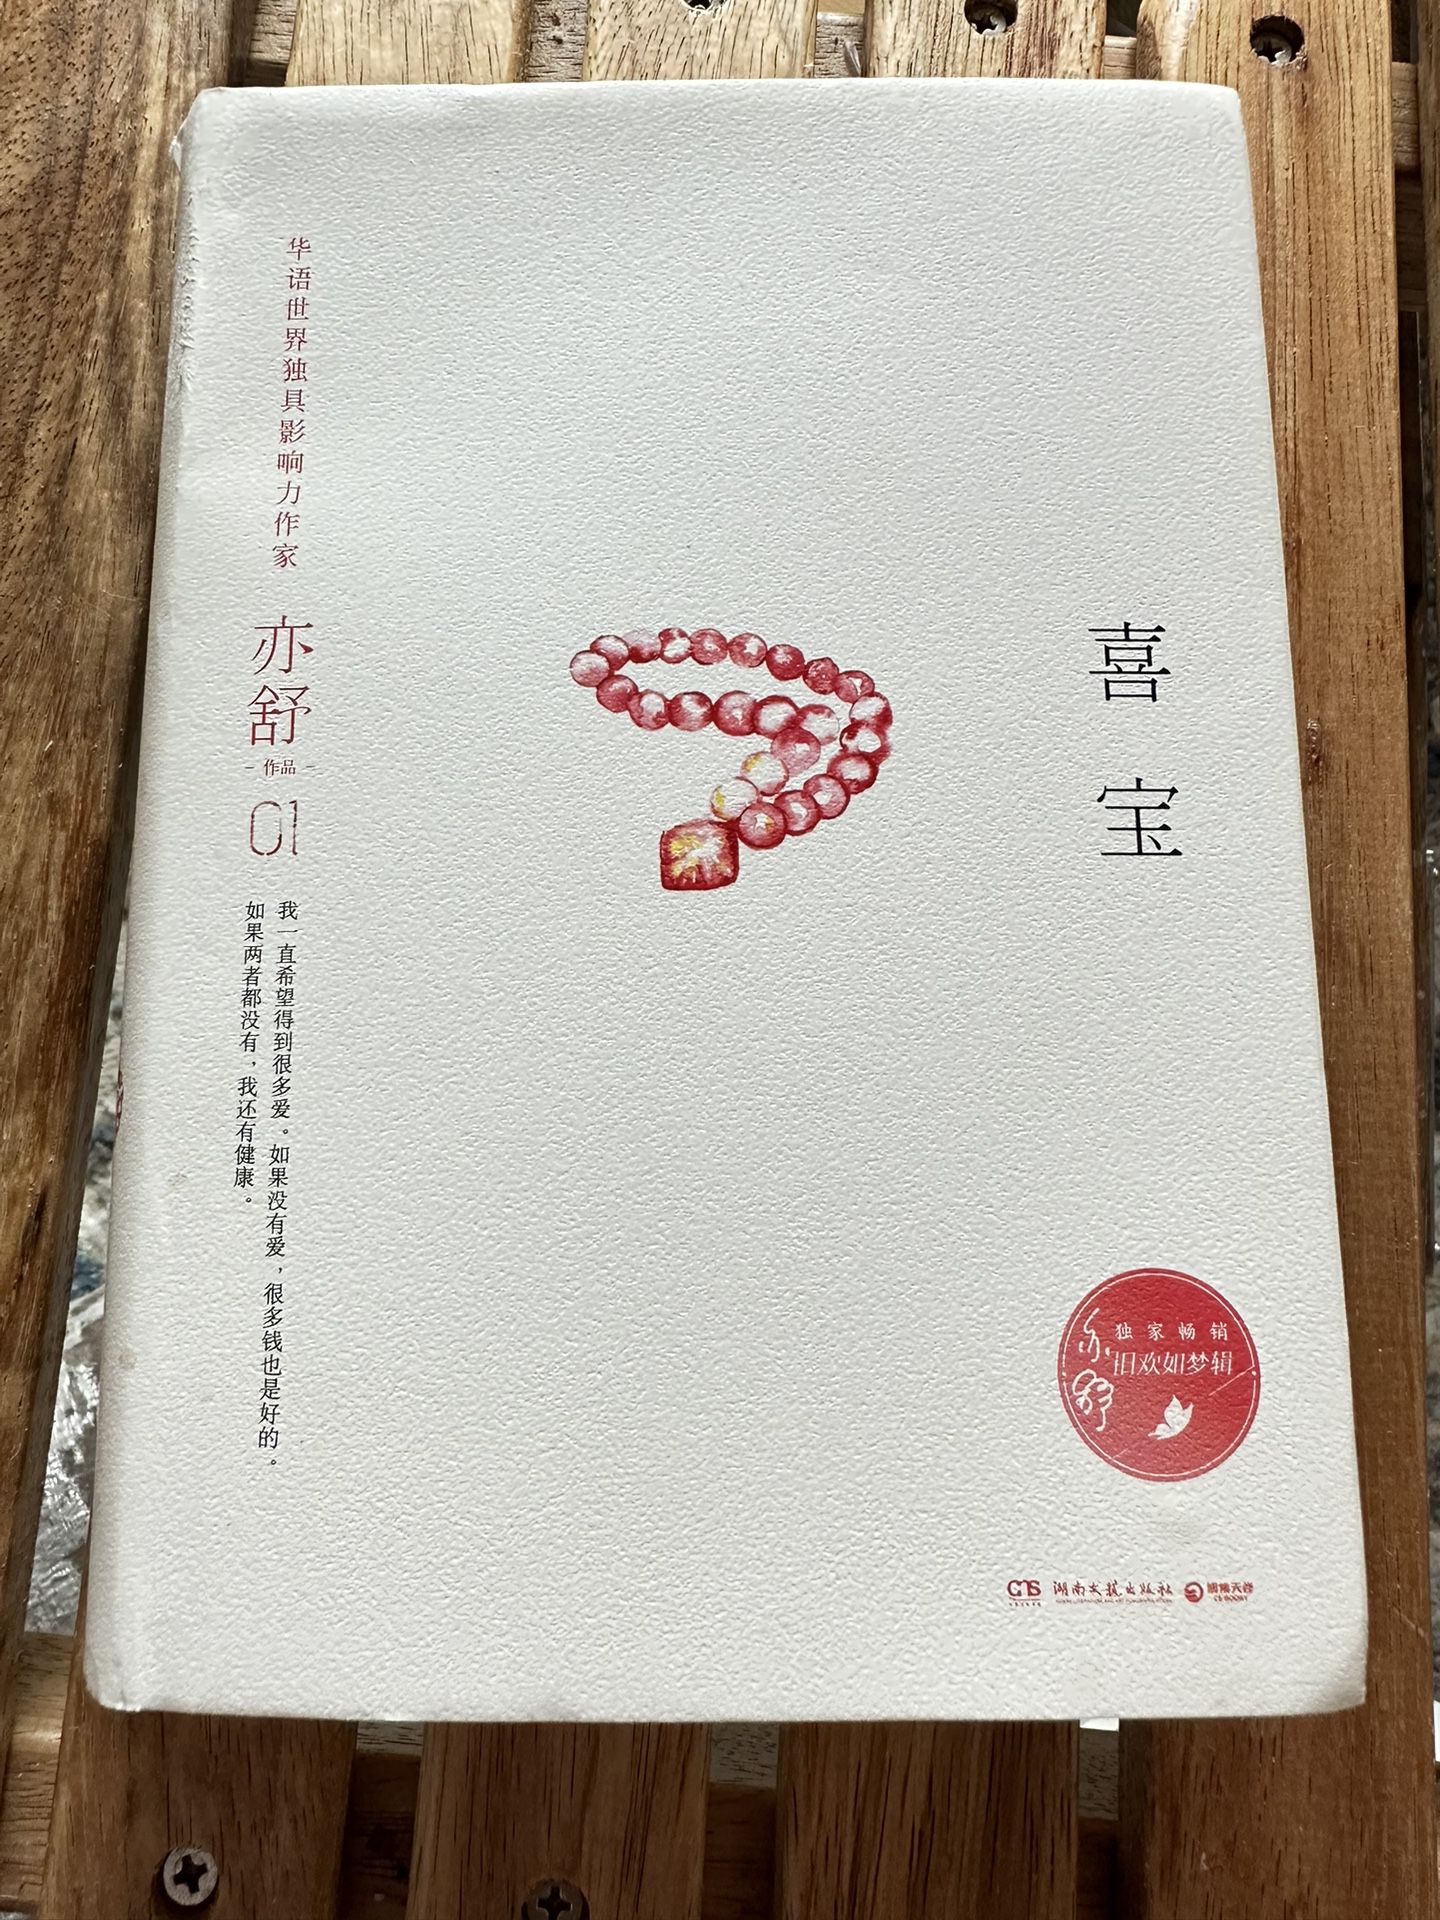 中文书 喜宝 亦舒著 The Story of Xi Bao By Yi Shu Chinese Edition